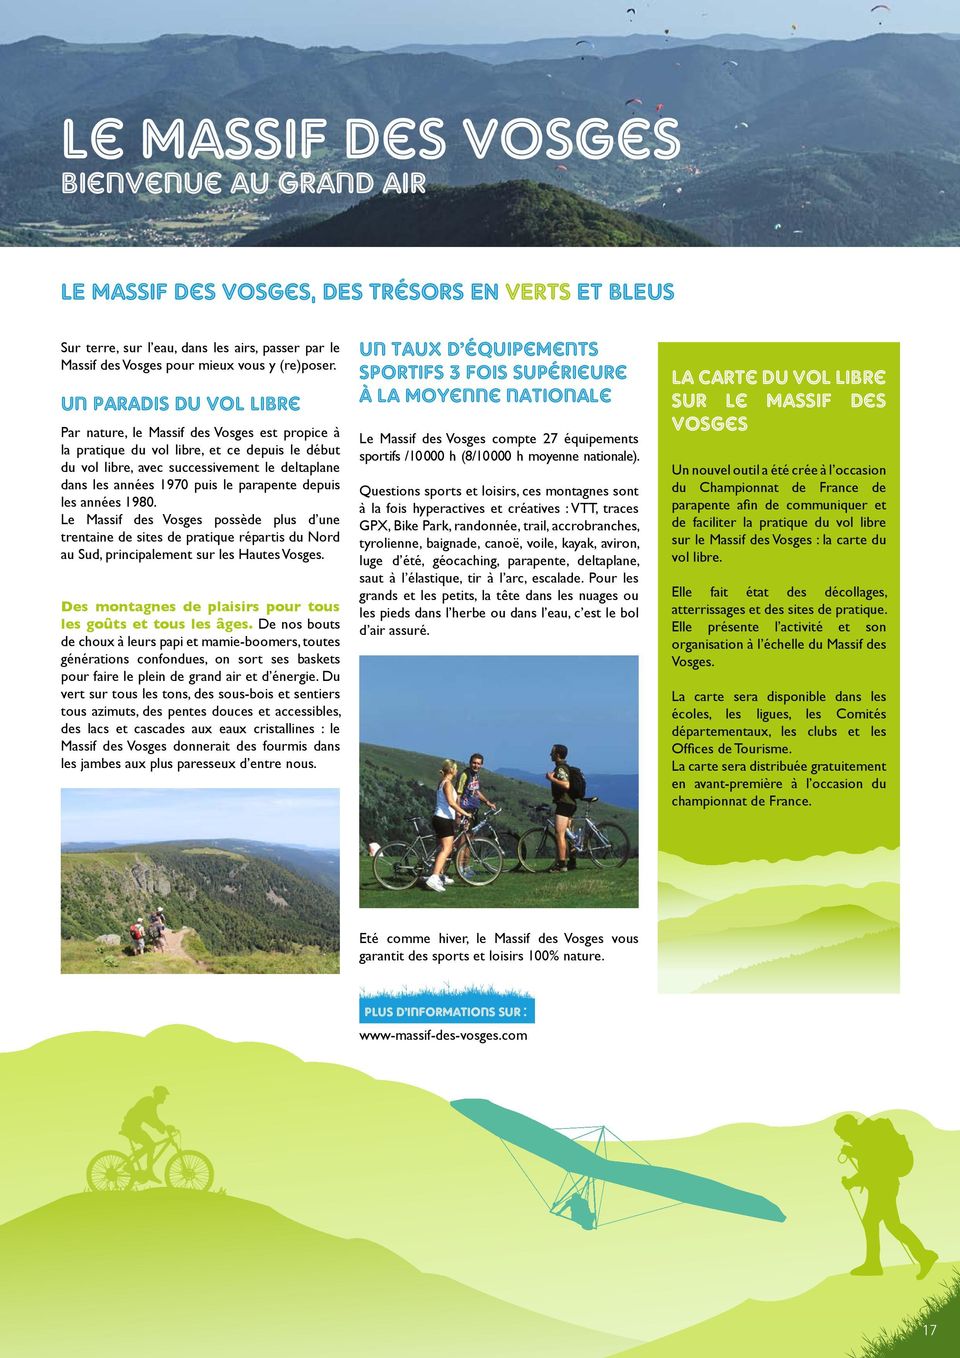 parapente depuis les années 1980. Le Massif des Vosges possède plus d une trentaine de sites de pratique répartis du Nord au Sud, principalement sur les Hautes Vosges.